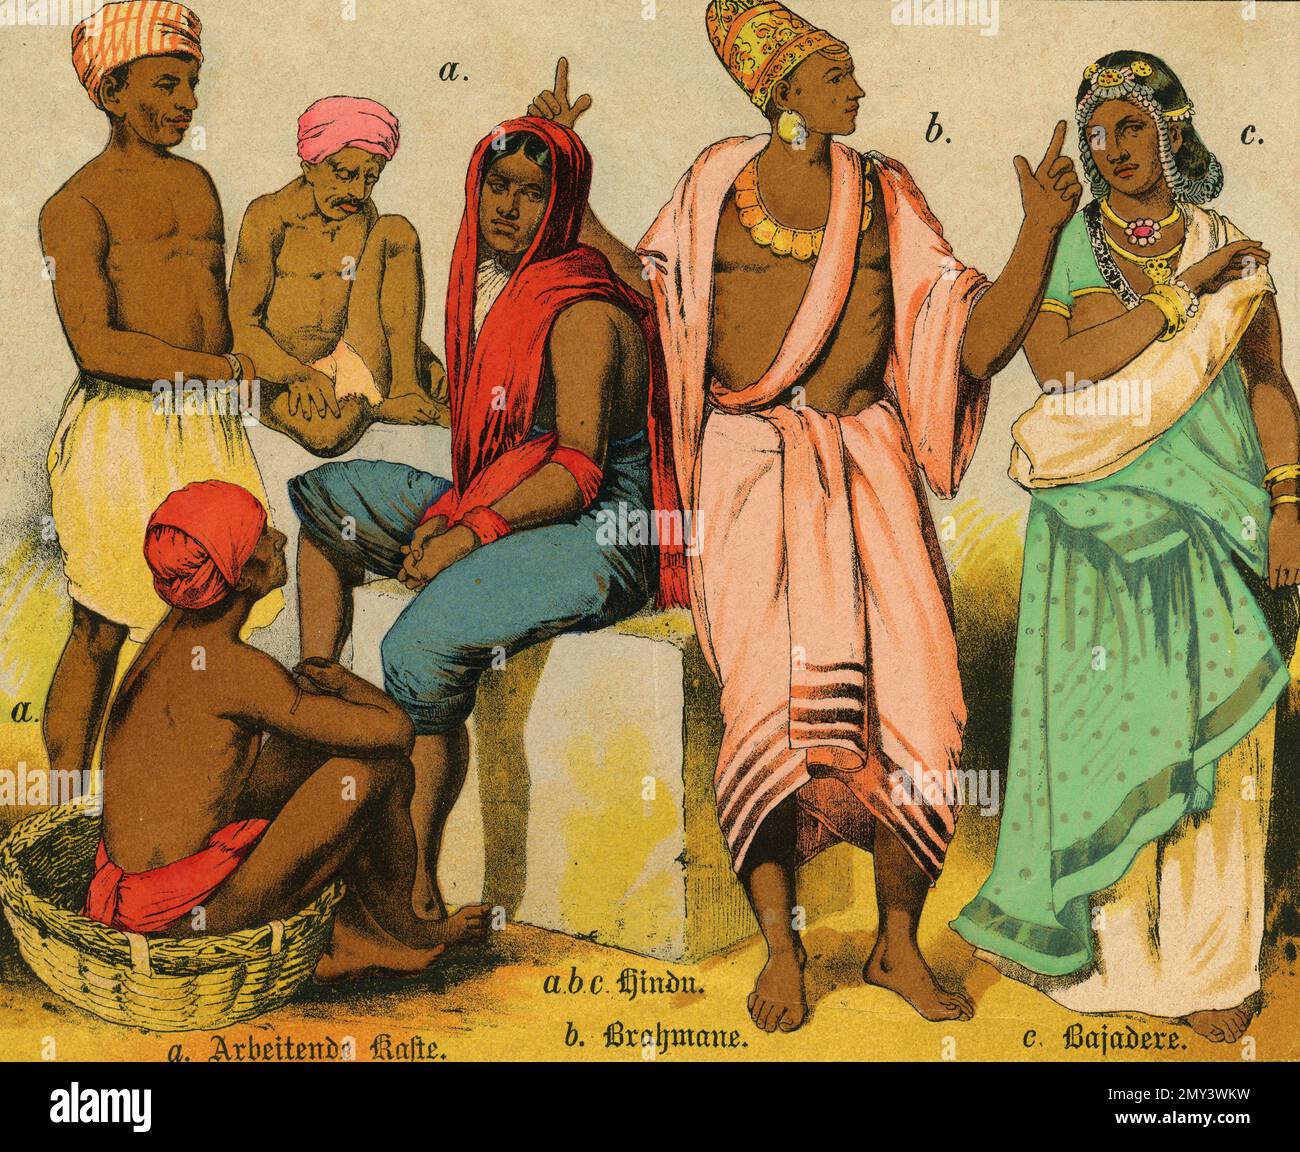 Populations du monde: Inde caste de travail, Hindou, Brahmin, Bajadere, illustration de couleur, Allemagne 1800s Banque D'Images